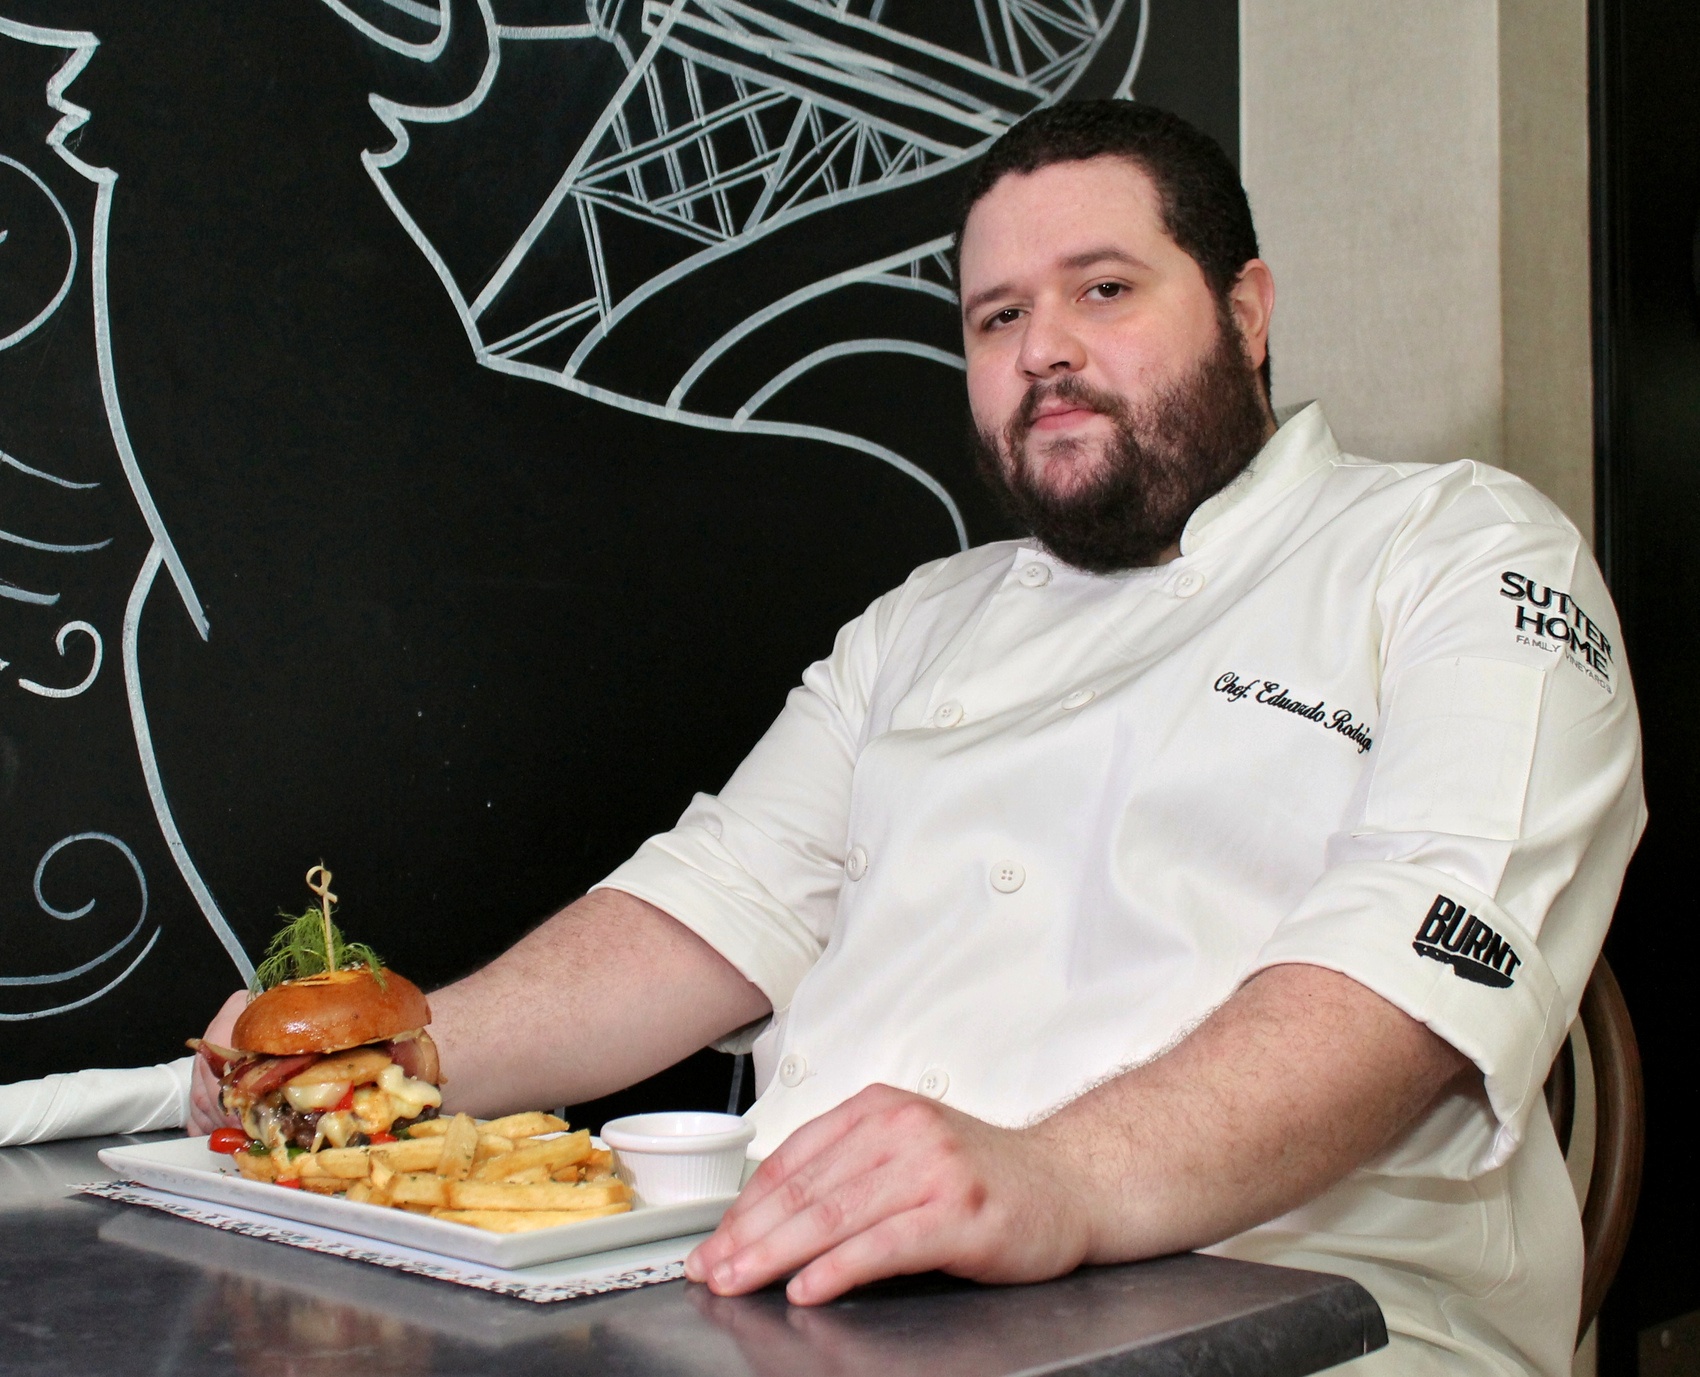 La hamburguesa del restaurante Celeste ganadora del Mayo Burger Tour 2016 representará a R.D. en el WFC en Alabama, E.U.